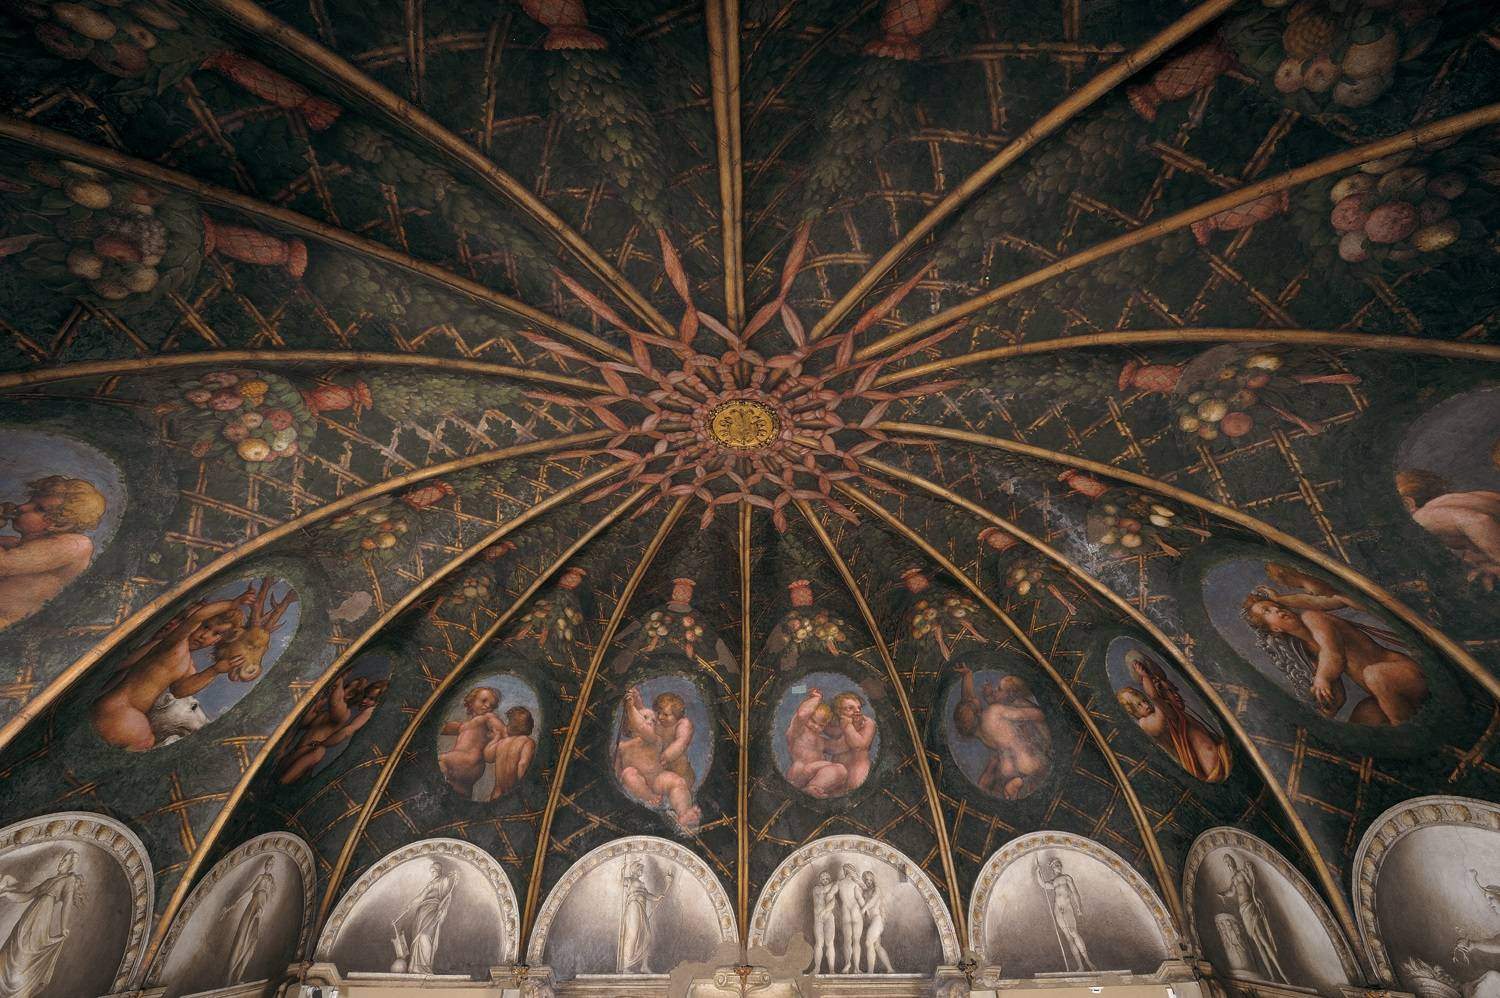 Une exposition à Correggio célèbre le 500e anniversaire de la Camera della Badessa, le chef-d'œuvre de Correggio